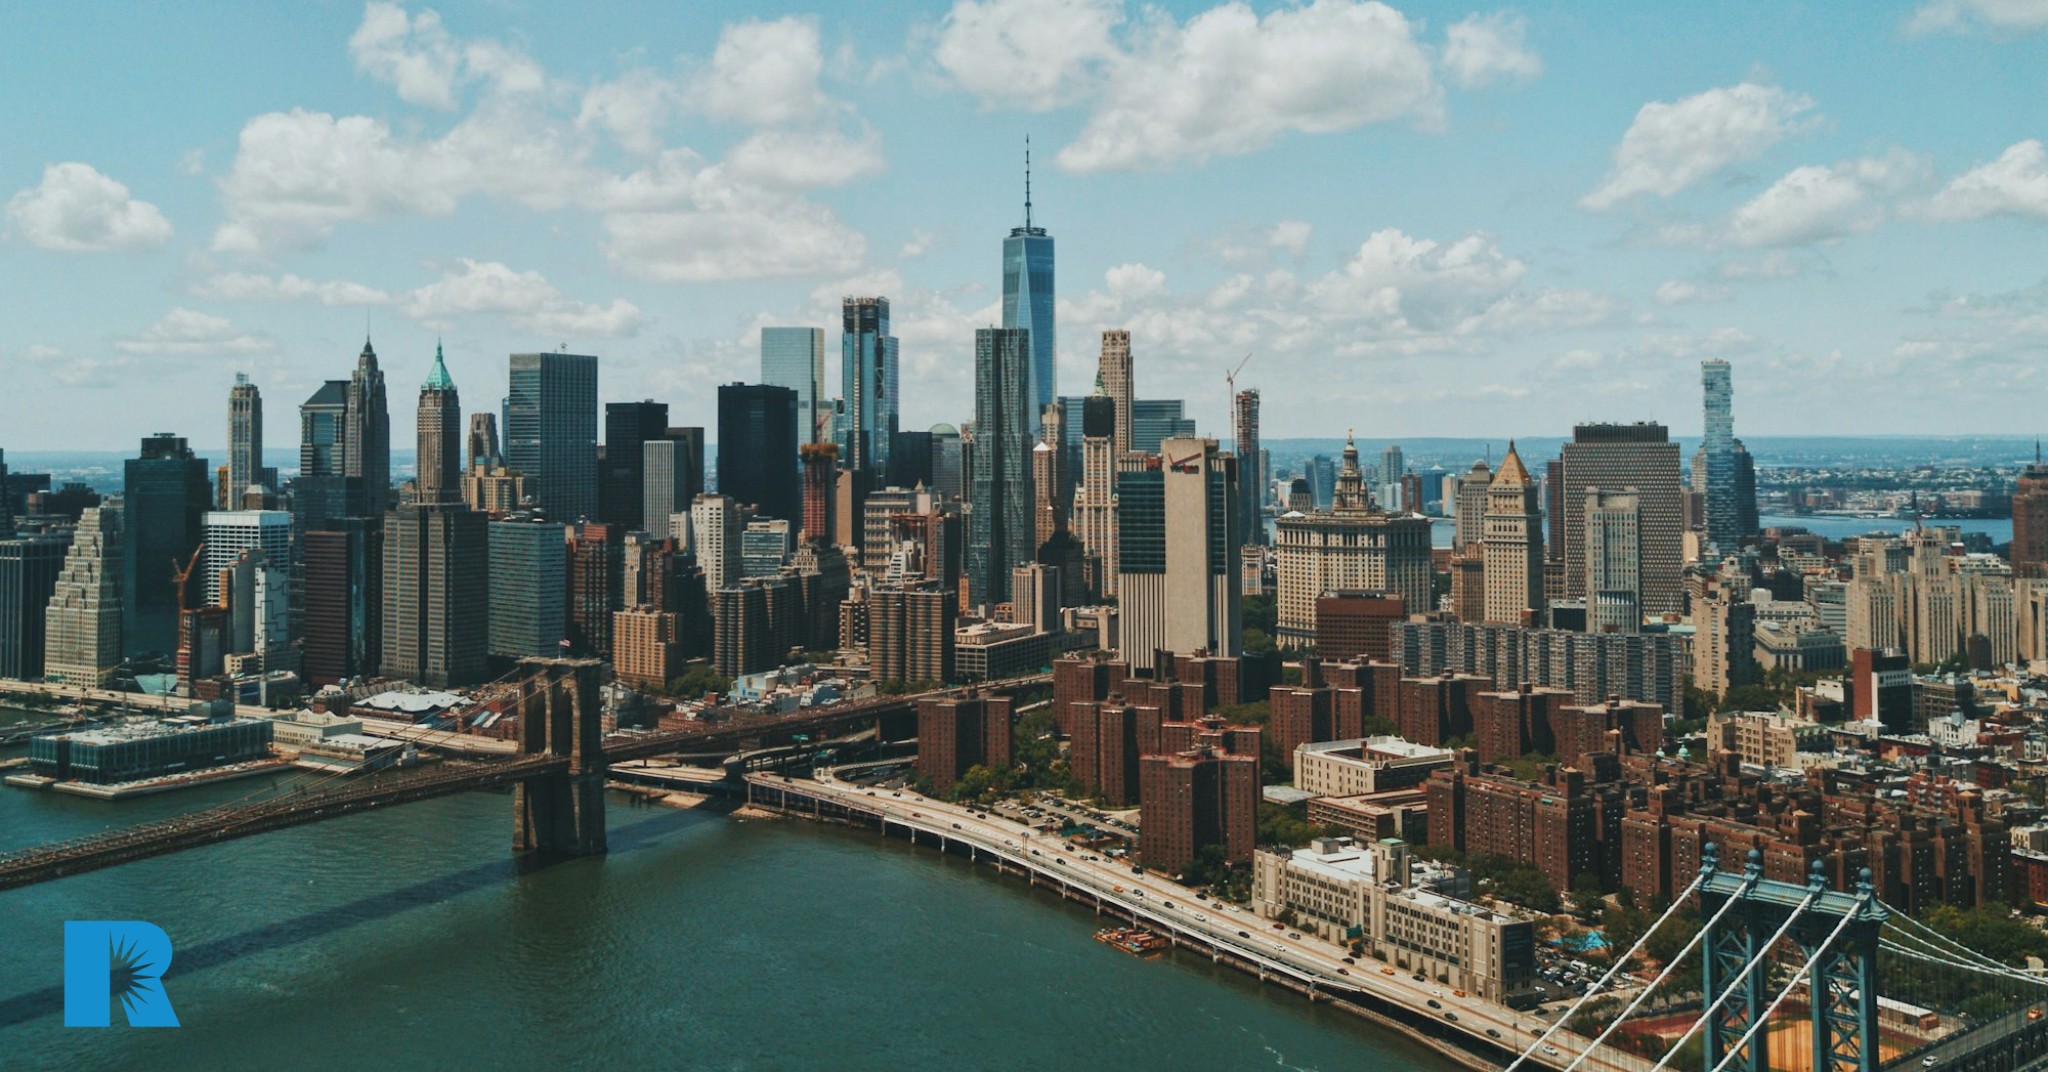 An aerial view of Manhattan island.